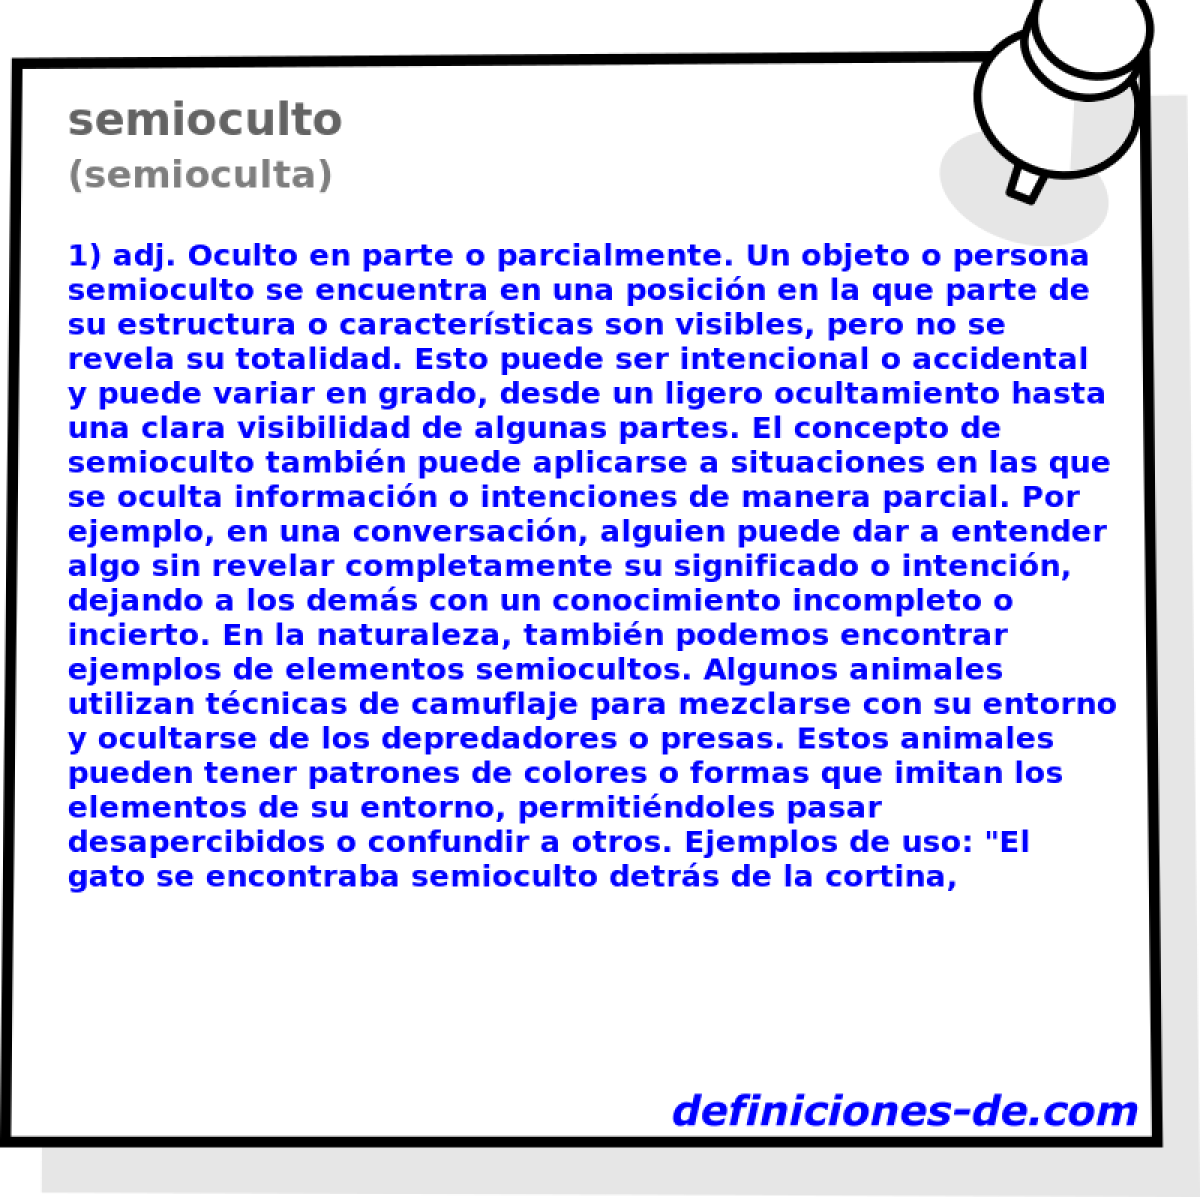 semioculto (semioculta)